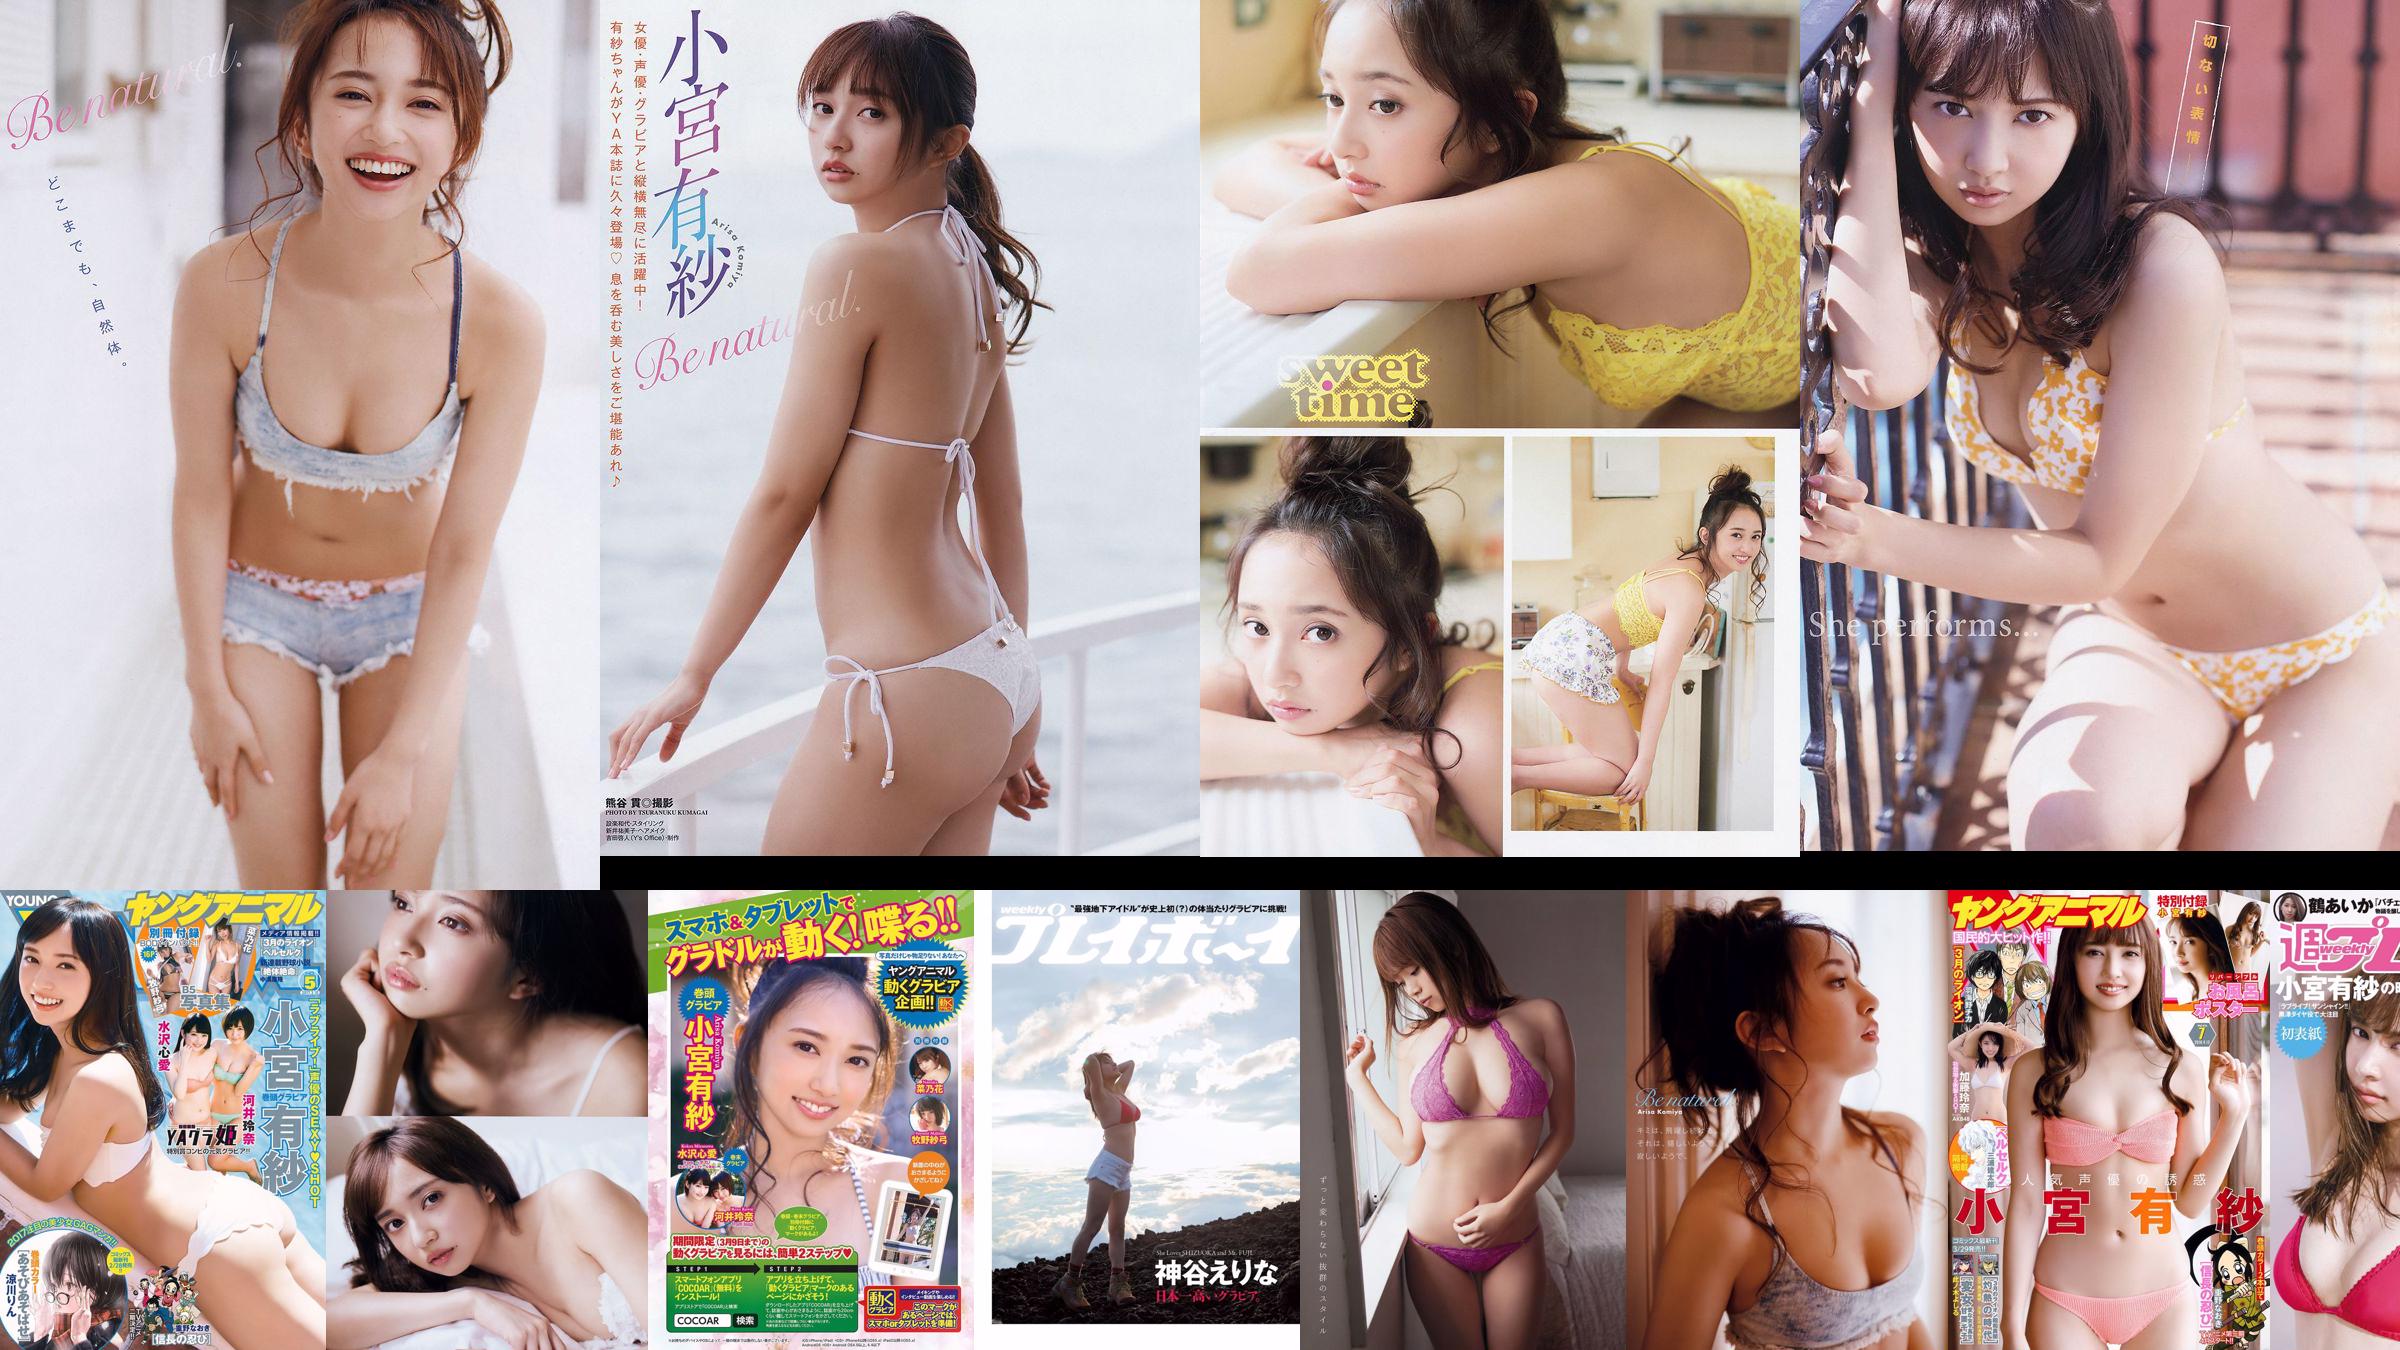 Arisa Komiya Aika Tsuru Sayaka Isoyama Kasumi Arimura Rina Otomo Sei Shiraishi Erina Kamiya [Playboy settimanale] 2017 No.41 Fotografia No.88f7da Pagina 9